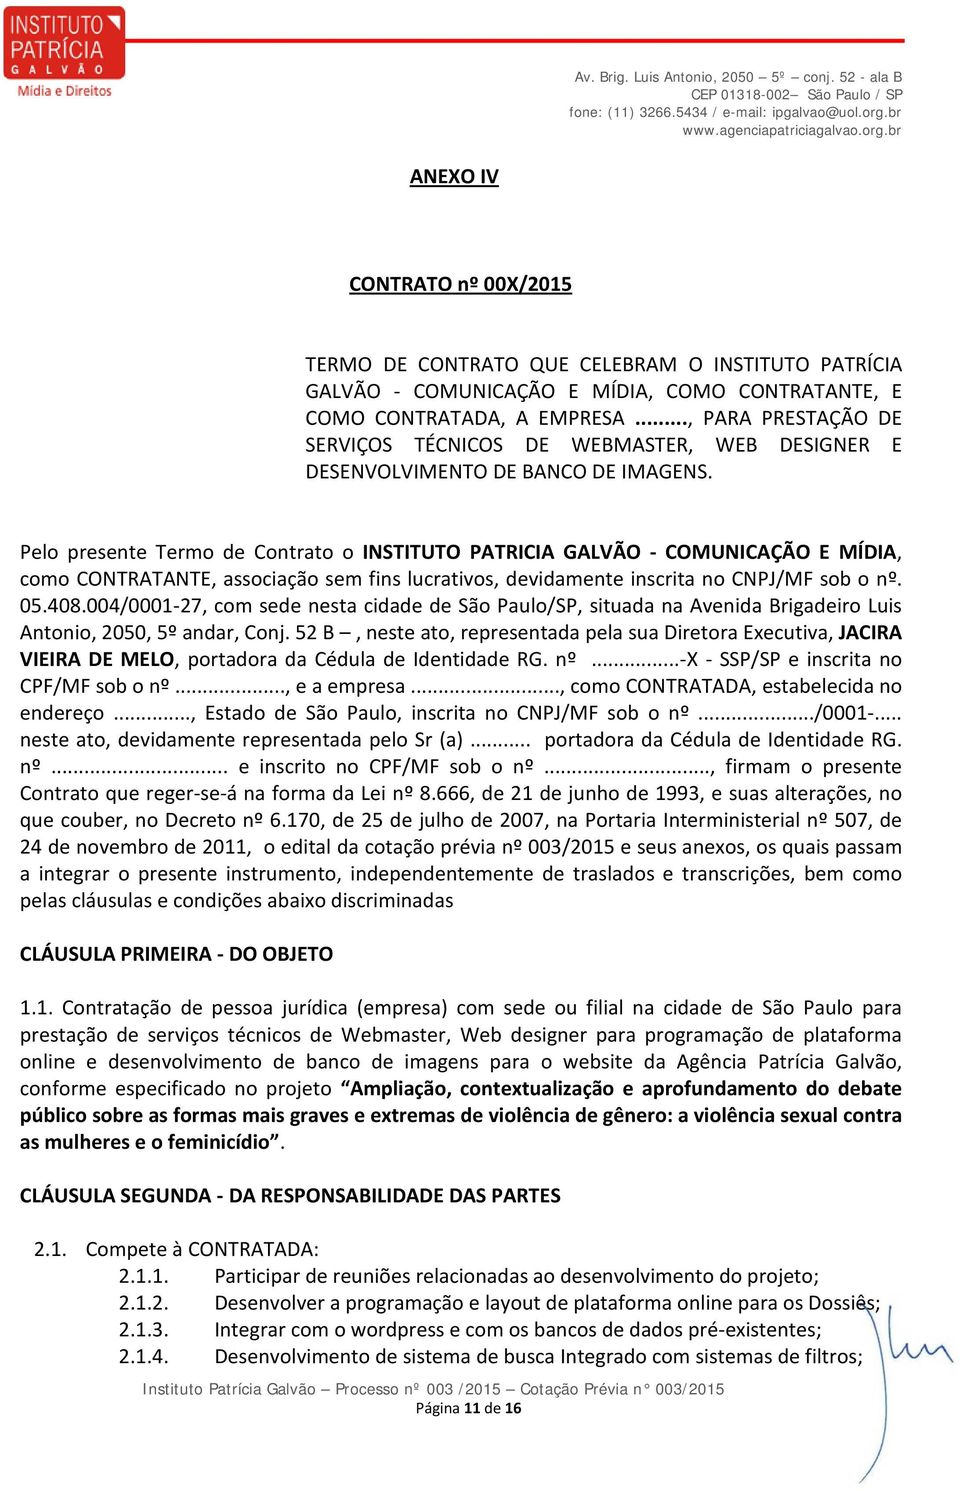 Pelo presente Termo de Contrato o INSTITUTO PATRICIA GALVÃO - COMUNICAÇÃO E MÍDIA, como CONTRATANTE, associação sem fins lucrativos, devidamente inscrita no CNPJ/MF sob o nº. 05.408.